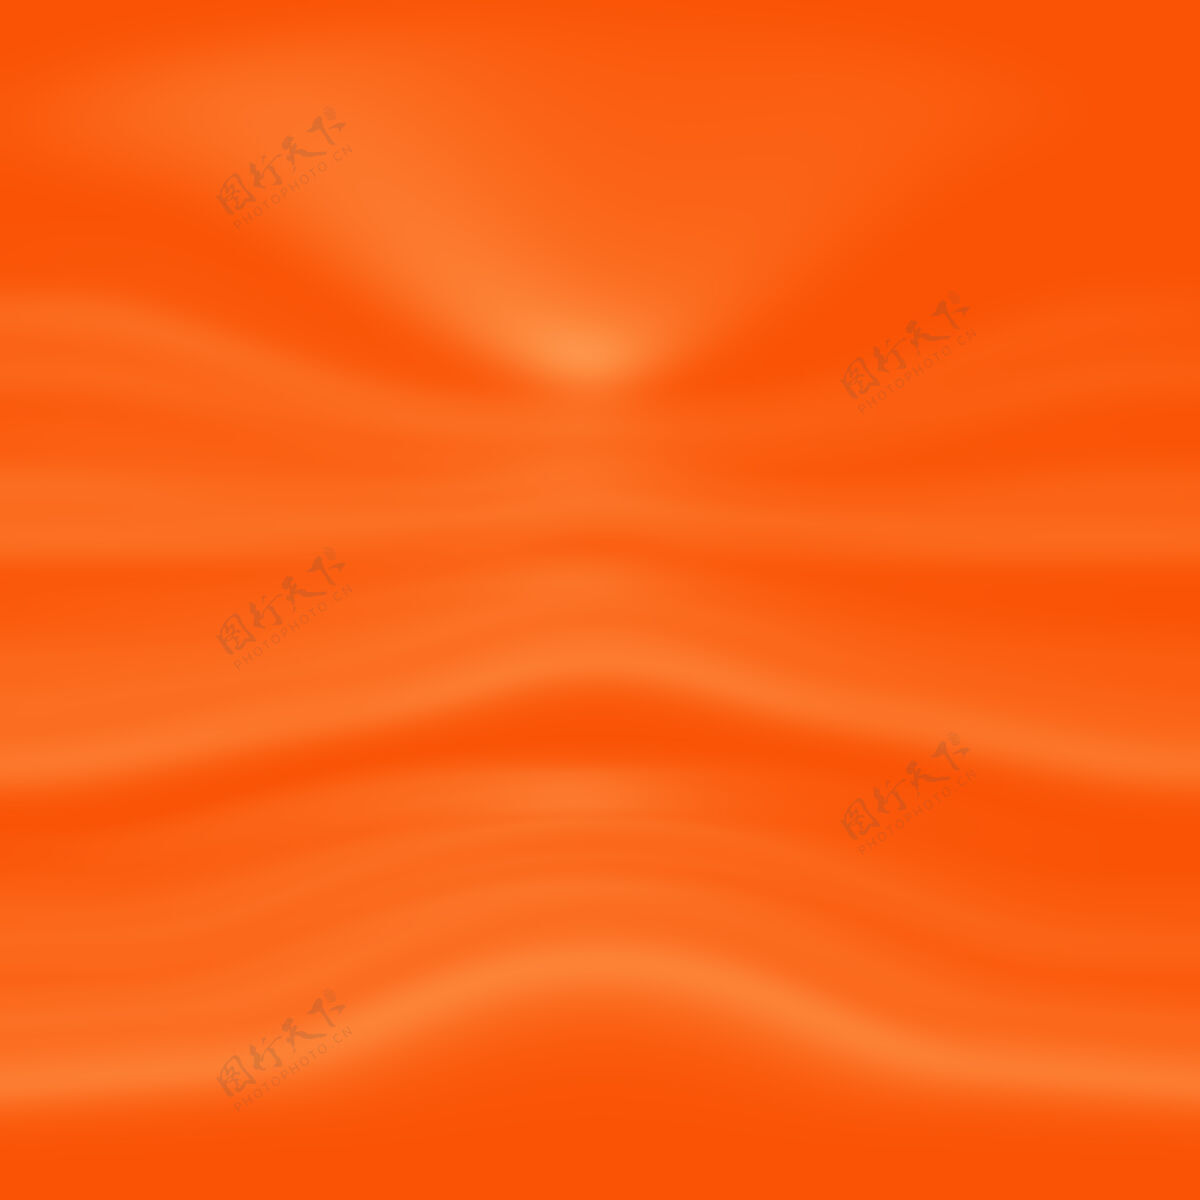 垃圾抽象明亮的橙红色背景与对角线模式油漆表面模糊